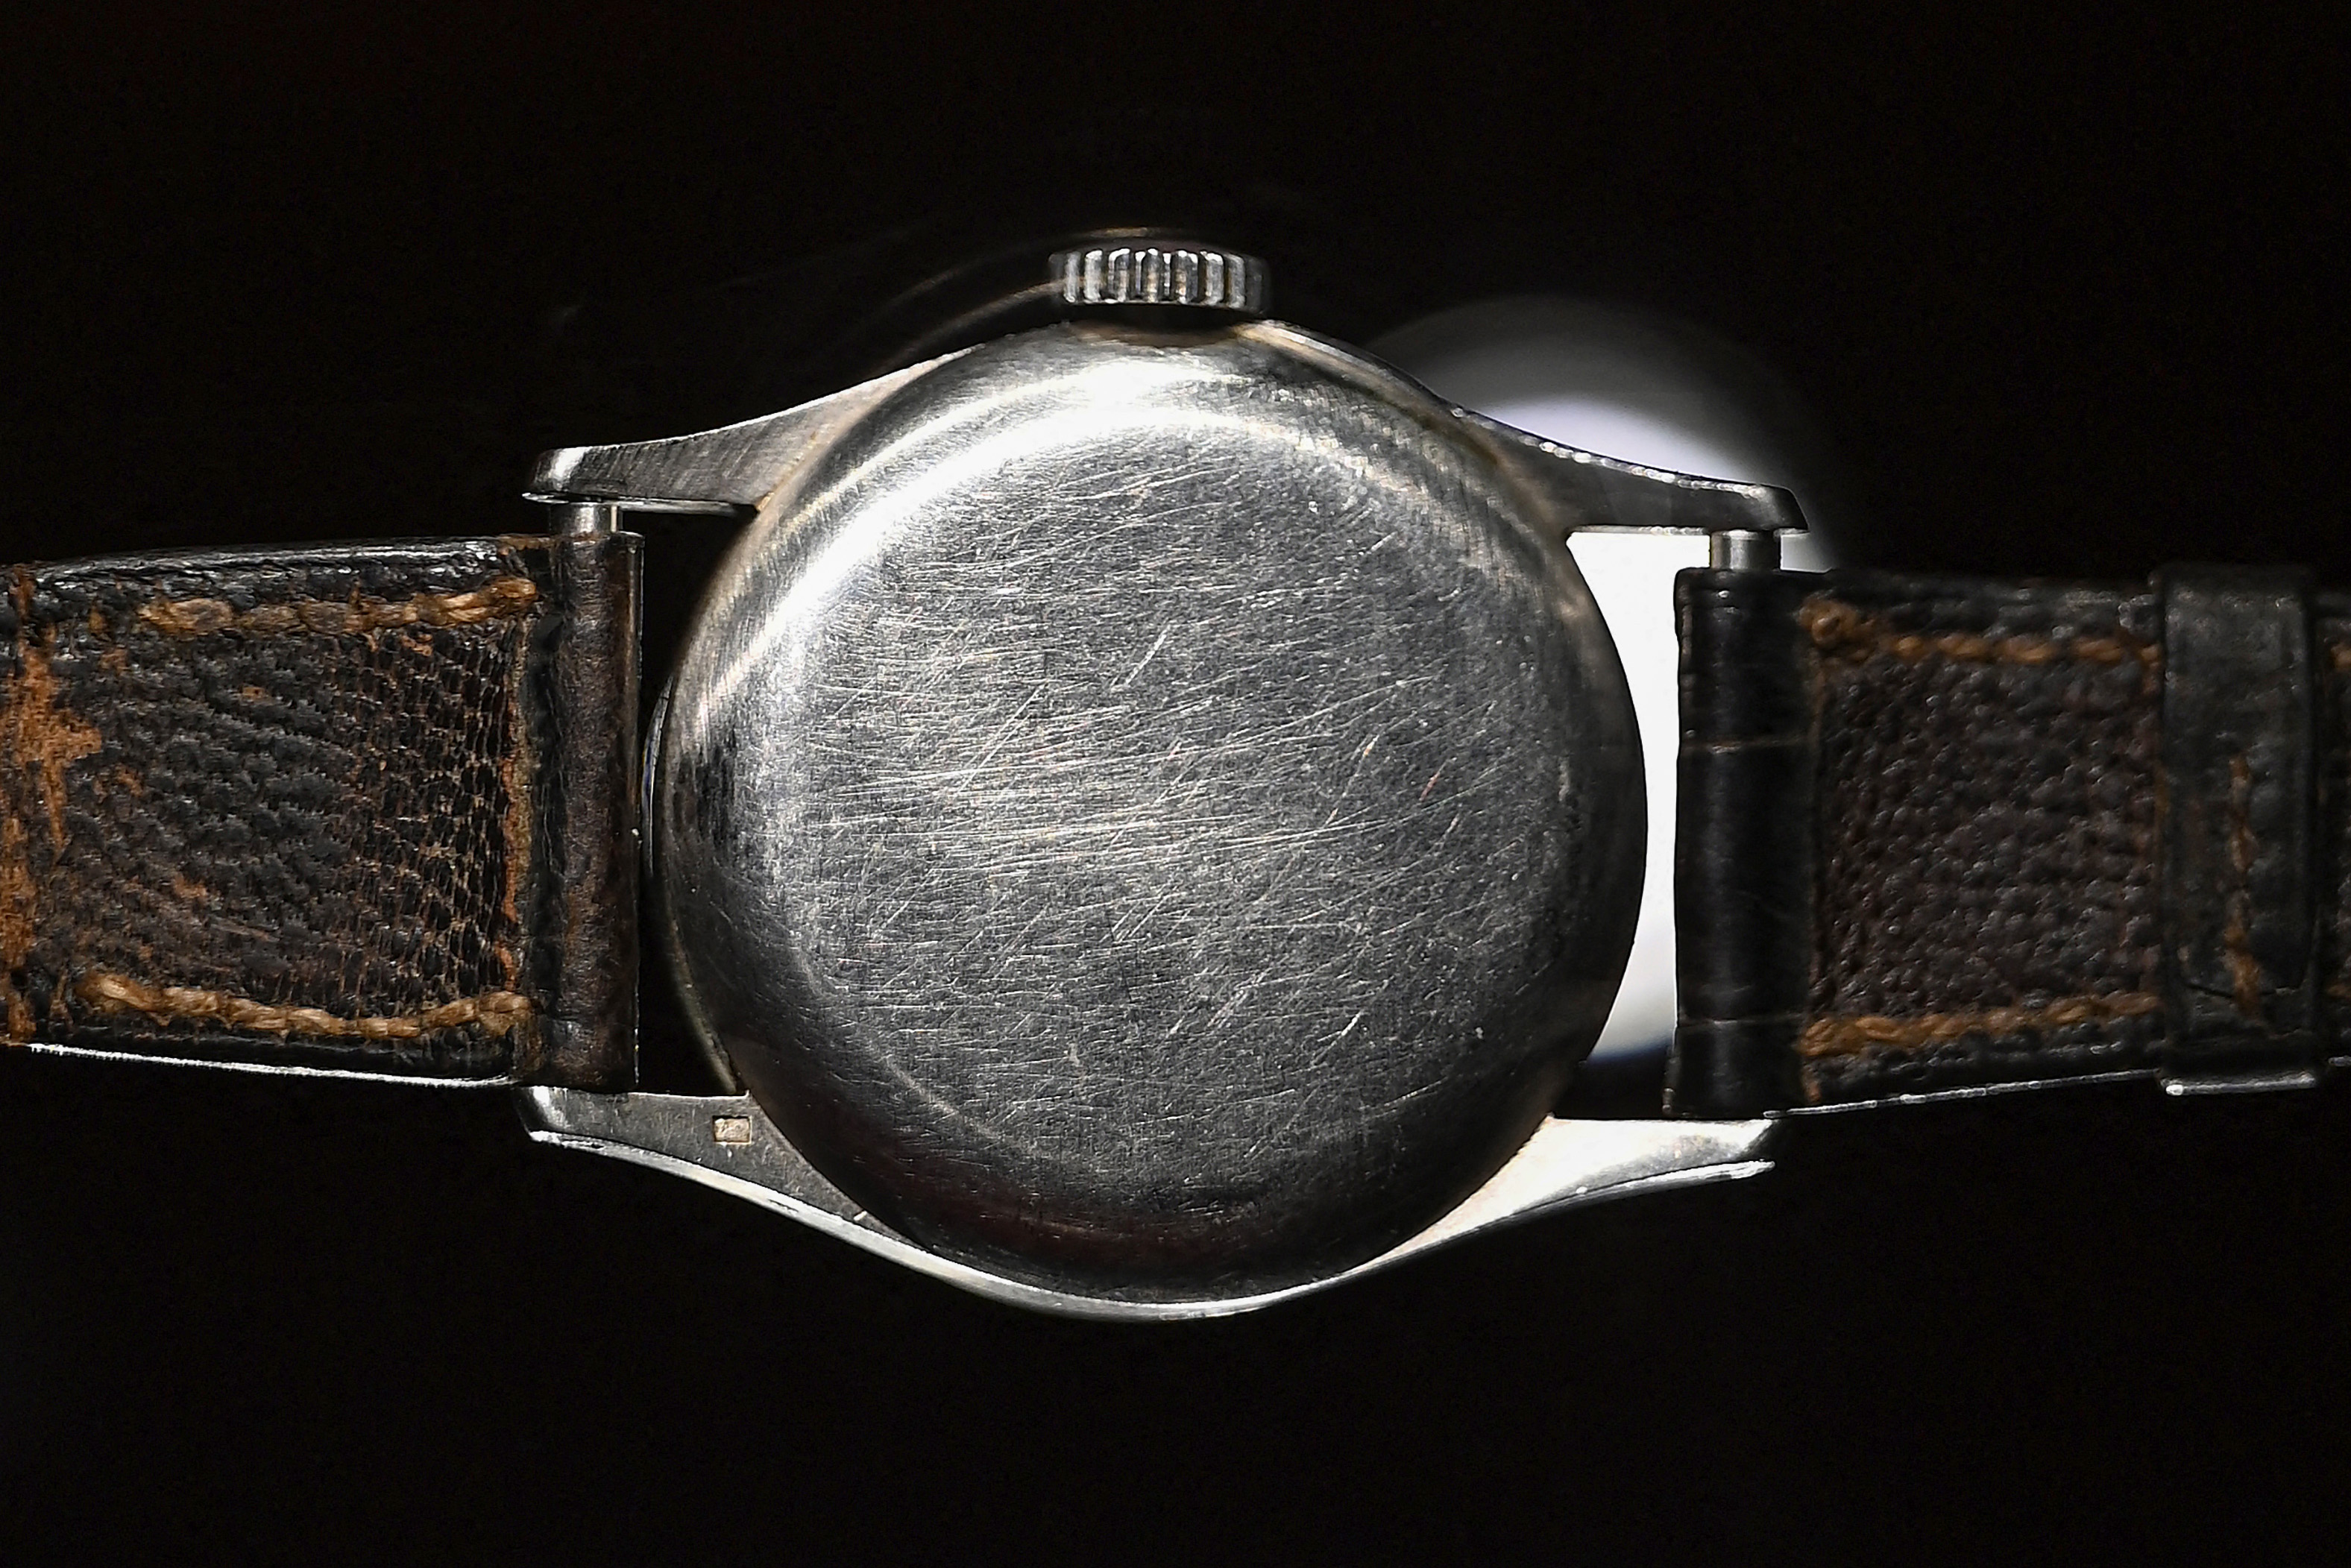 The Patek Philippe Ref 96 Quantieme Lune timepiece,